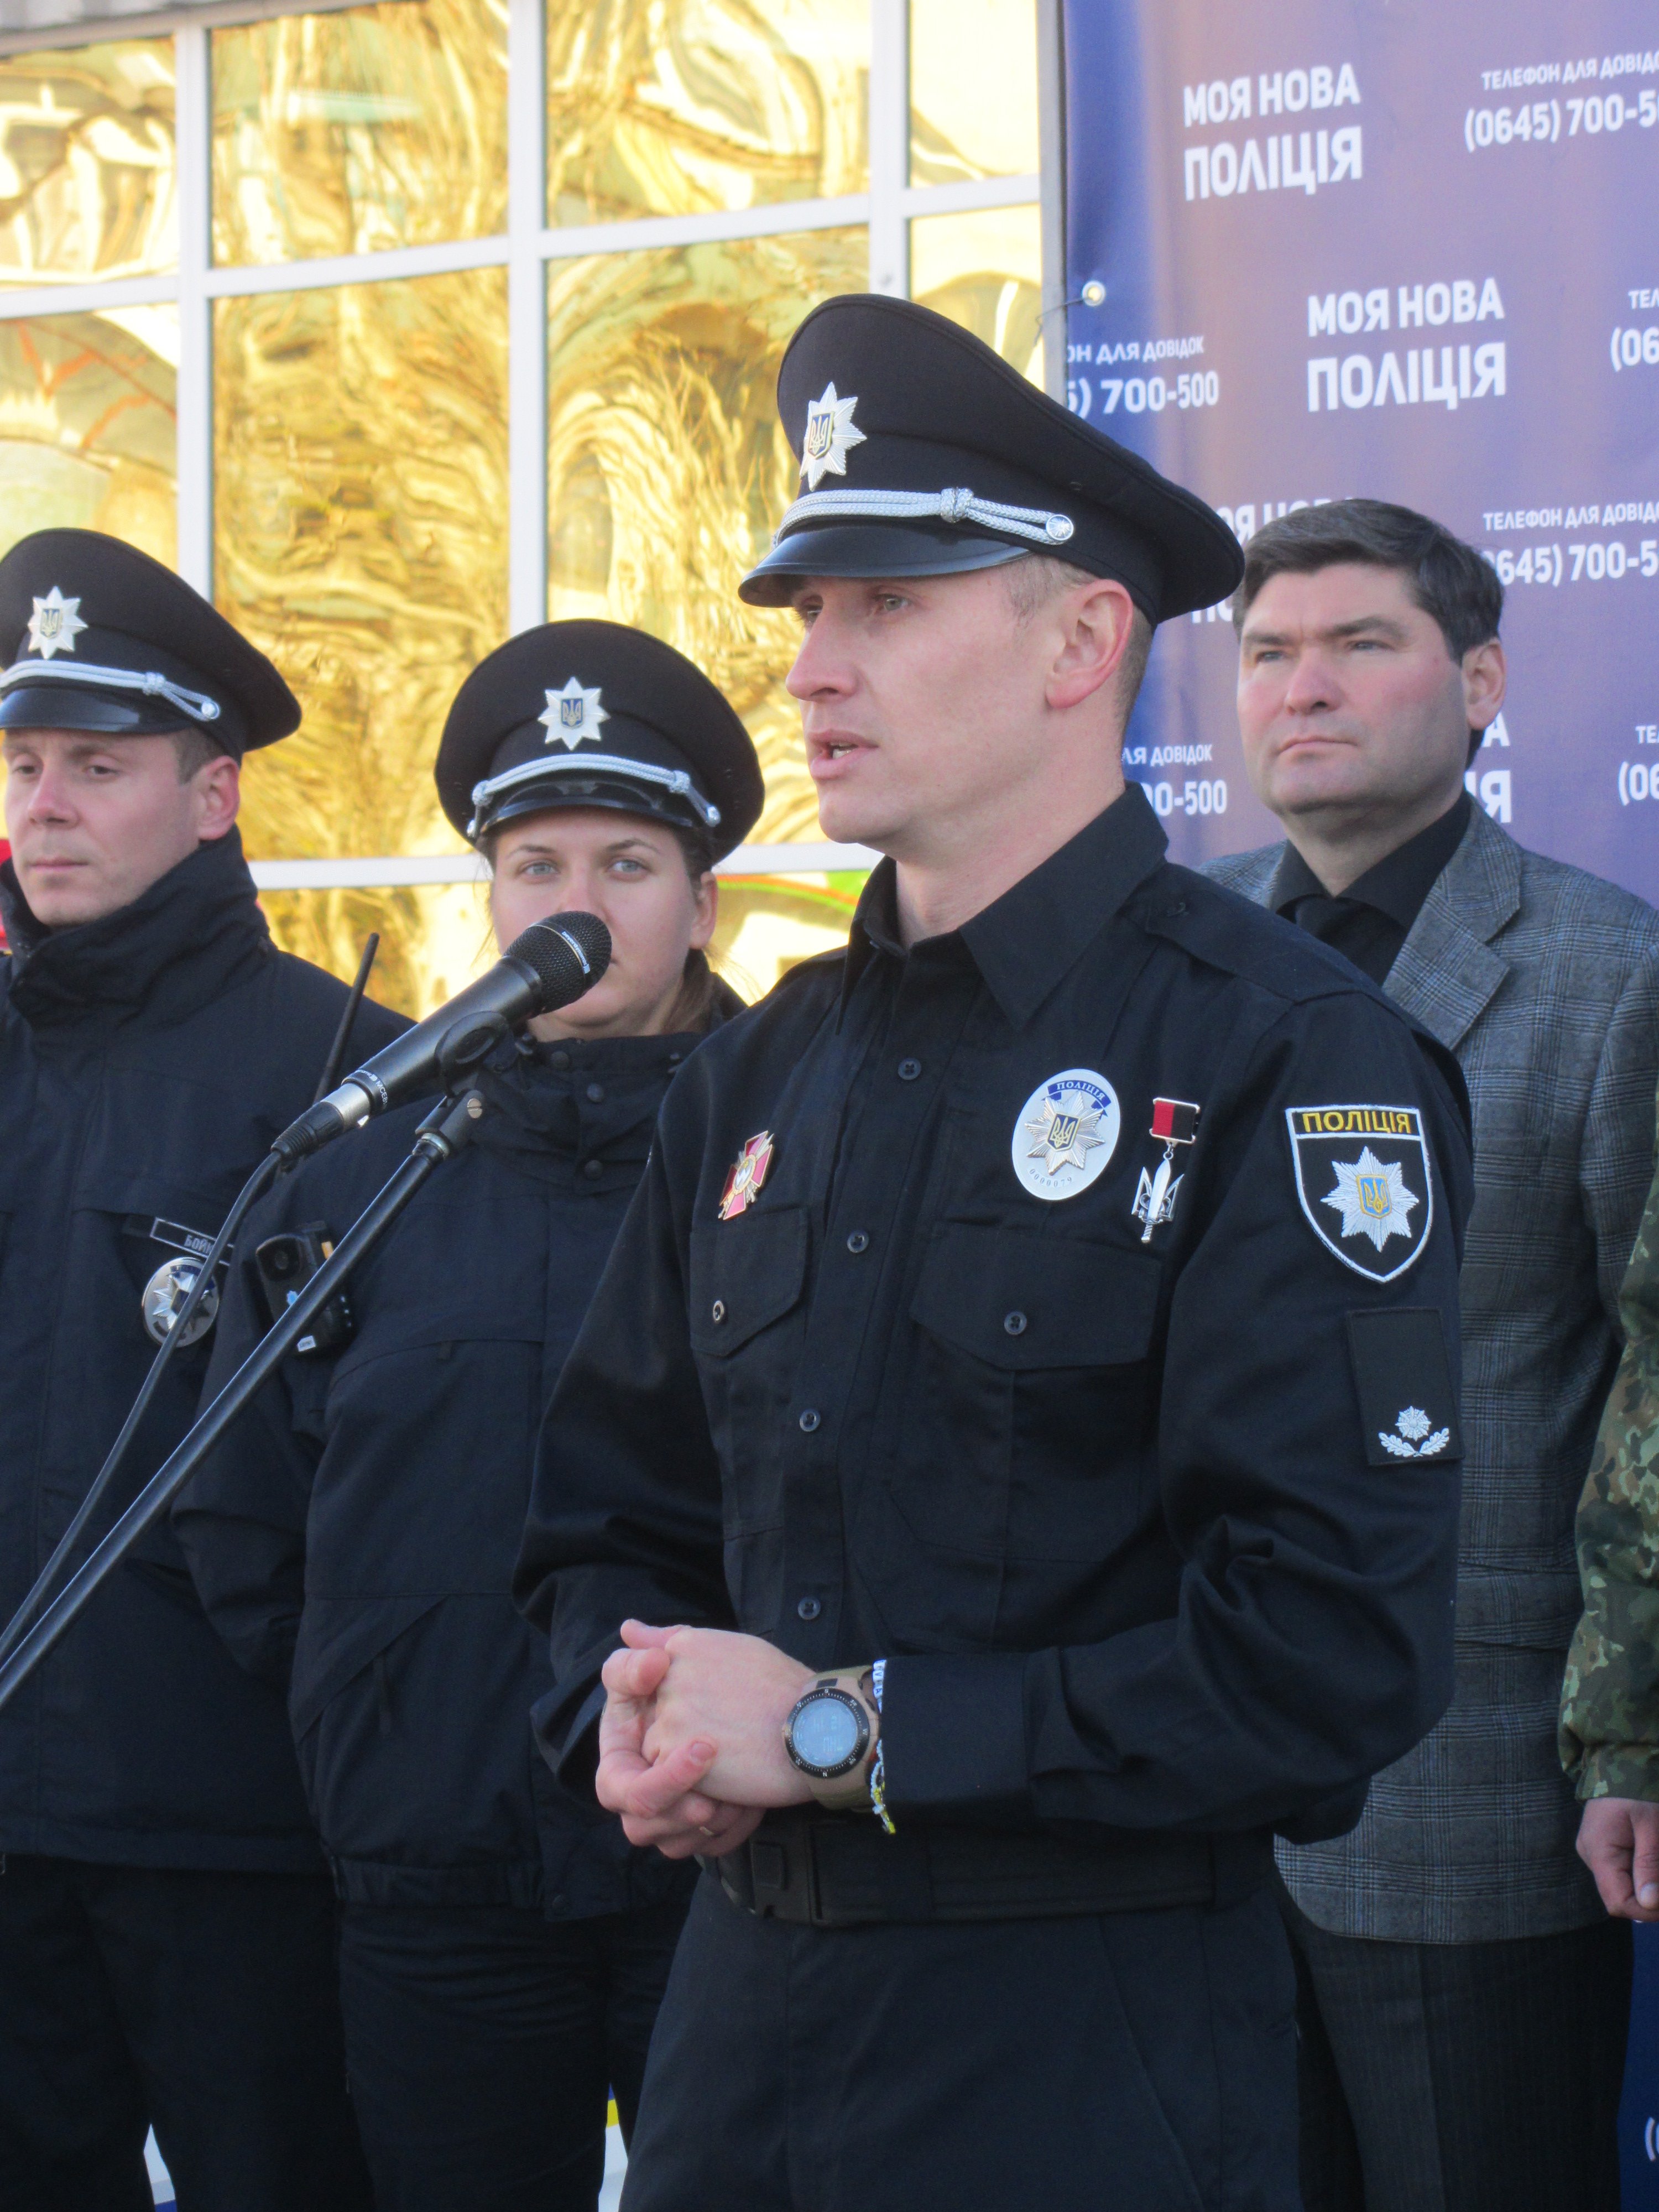 Нова поліція у Сєвєродонецьку: у кандидати записуються і чоловіки і жінки (ФОТО) - фото 3